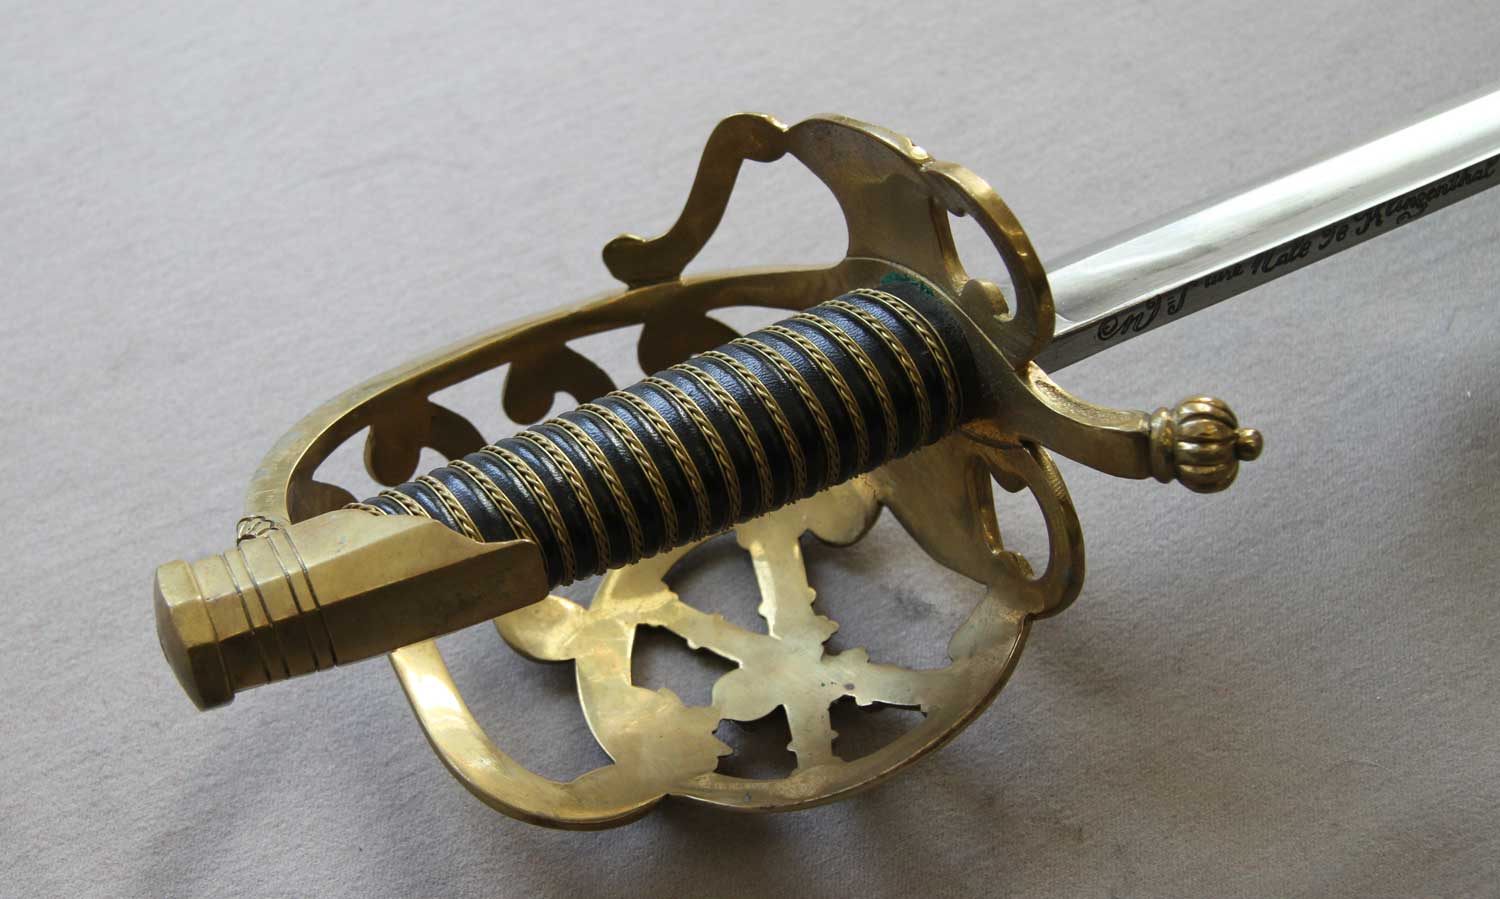 French, Artillery Senior Officer's Sword